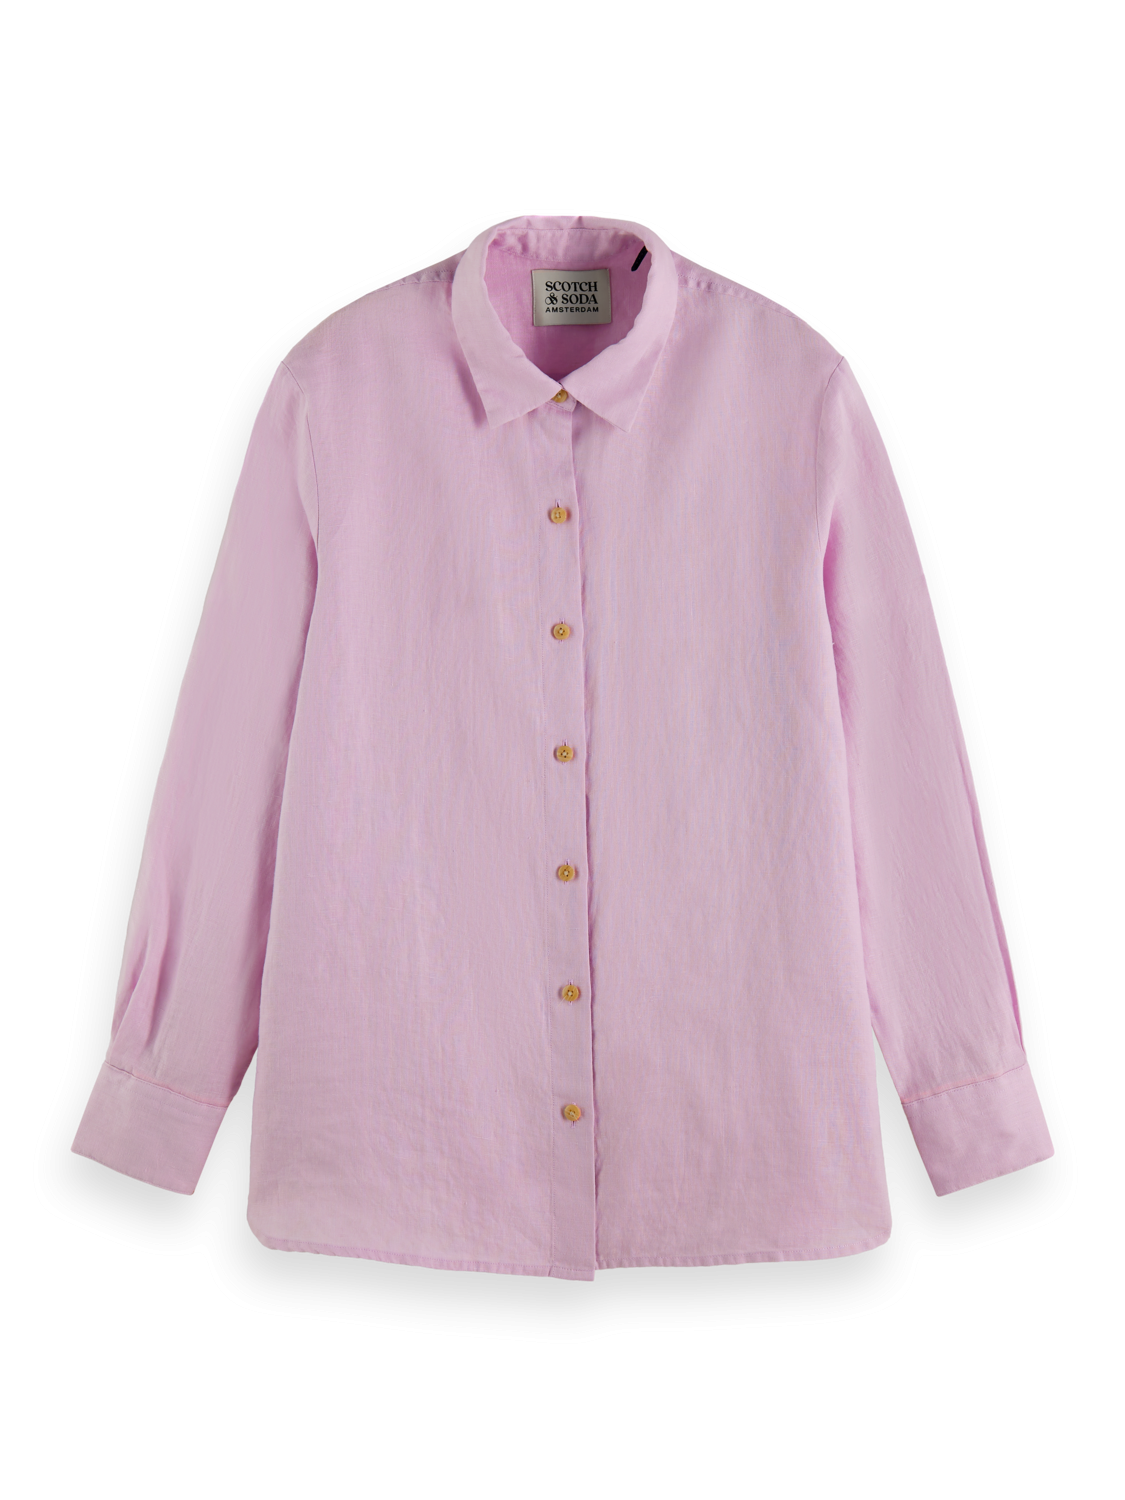 Рубашка женская Scotch & Soda 172712/0503 розовая 40